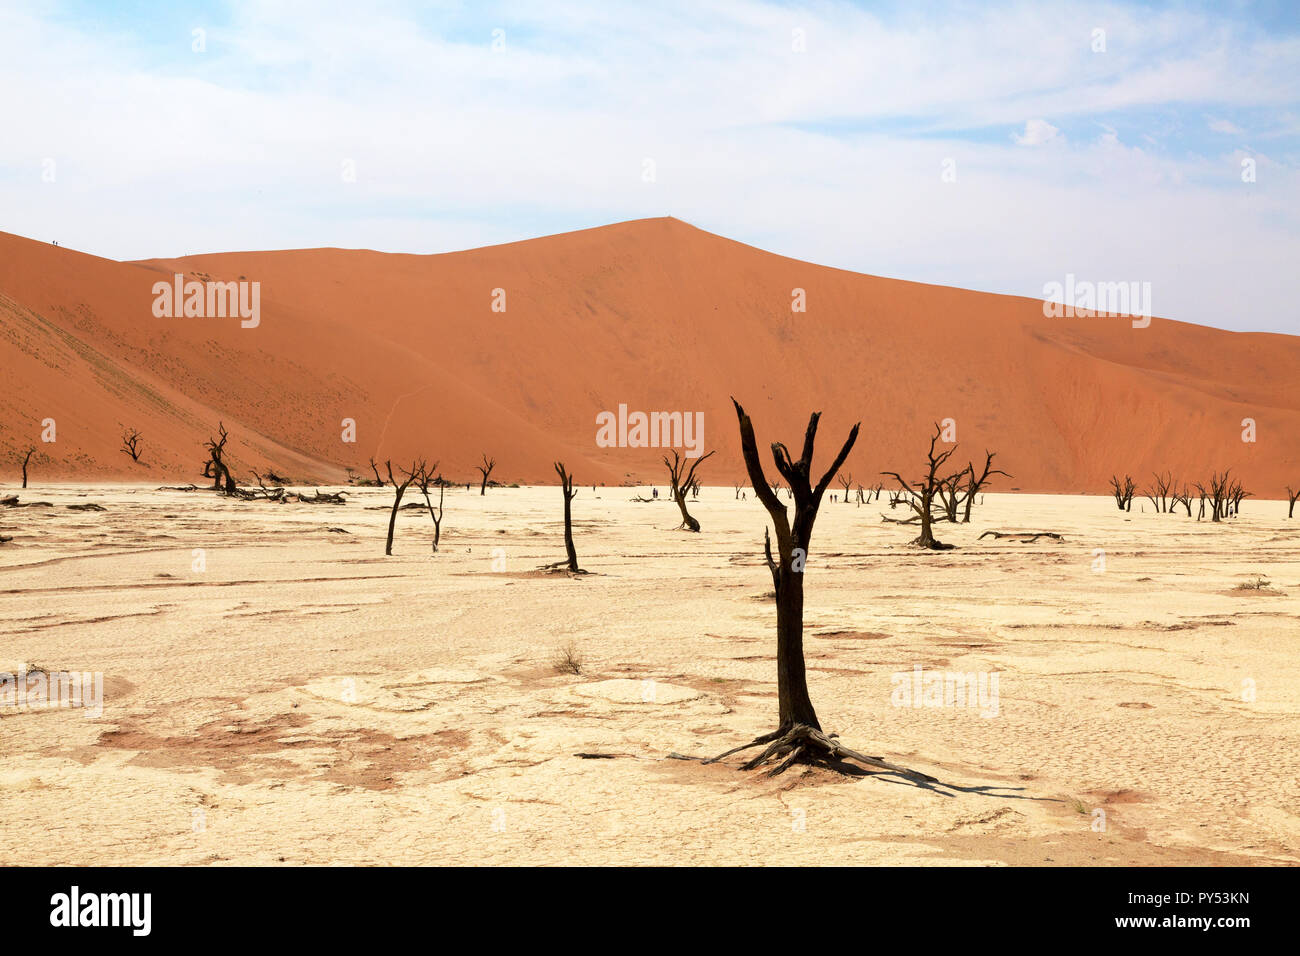 Deadvlei Namibie - désert paysage avec des arbres morts depuis 8000 ans dans les dunes du désert du Namib, le Namib Naukluft National Park, Namibie Banque D'Images